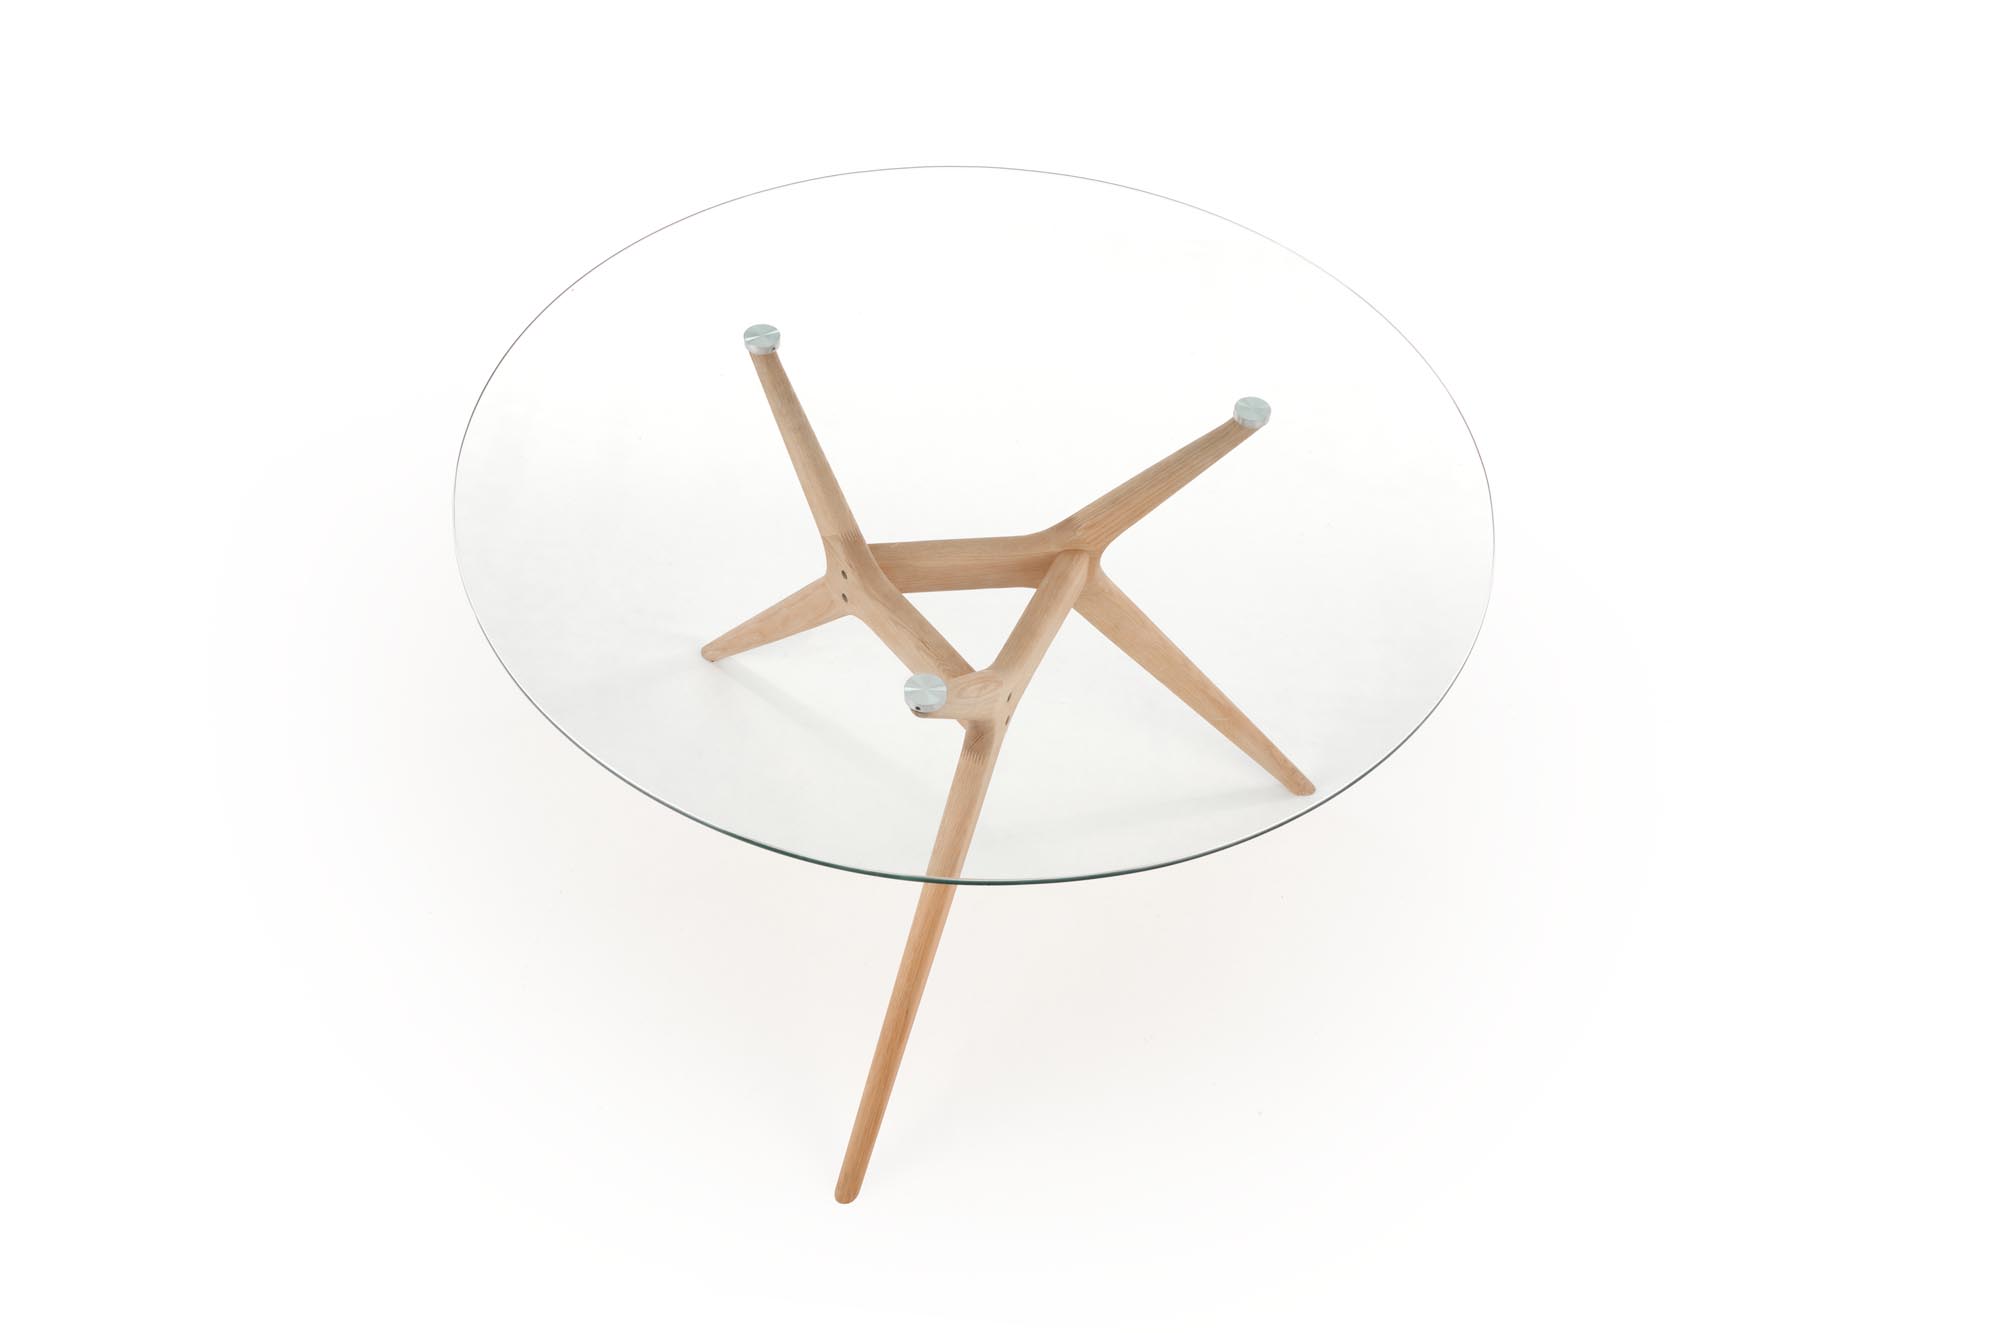 ASHMORE stôl Pracovná doska - Transparentný, noha - prírodné ashmore Stôl Pracovná doska - Transparentný, noha - prírodné